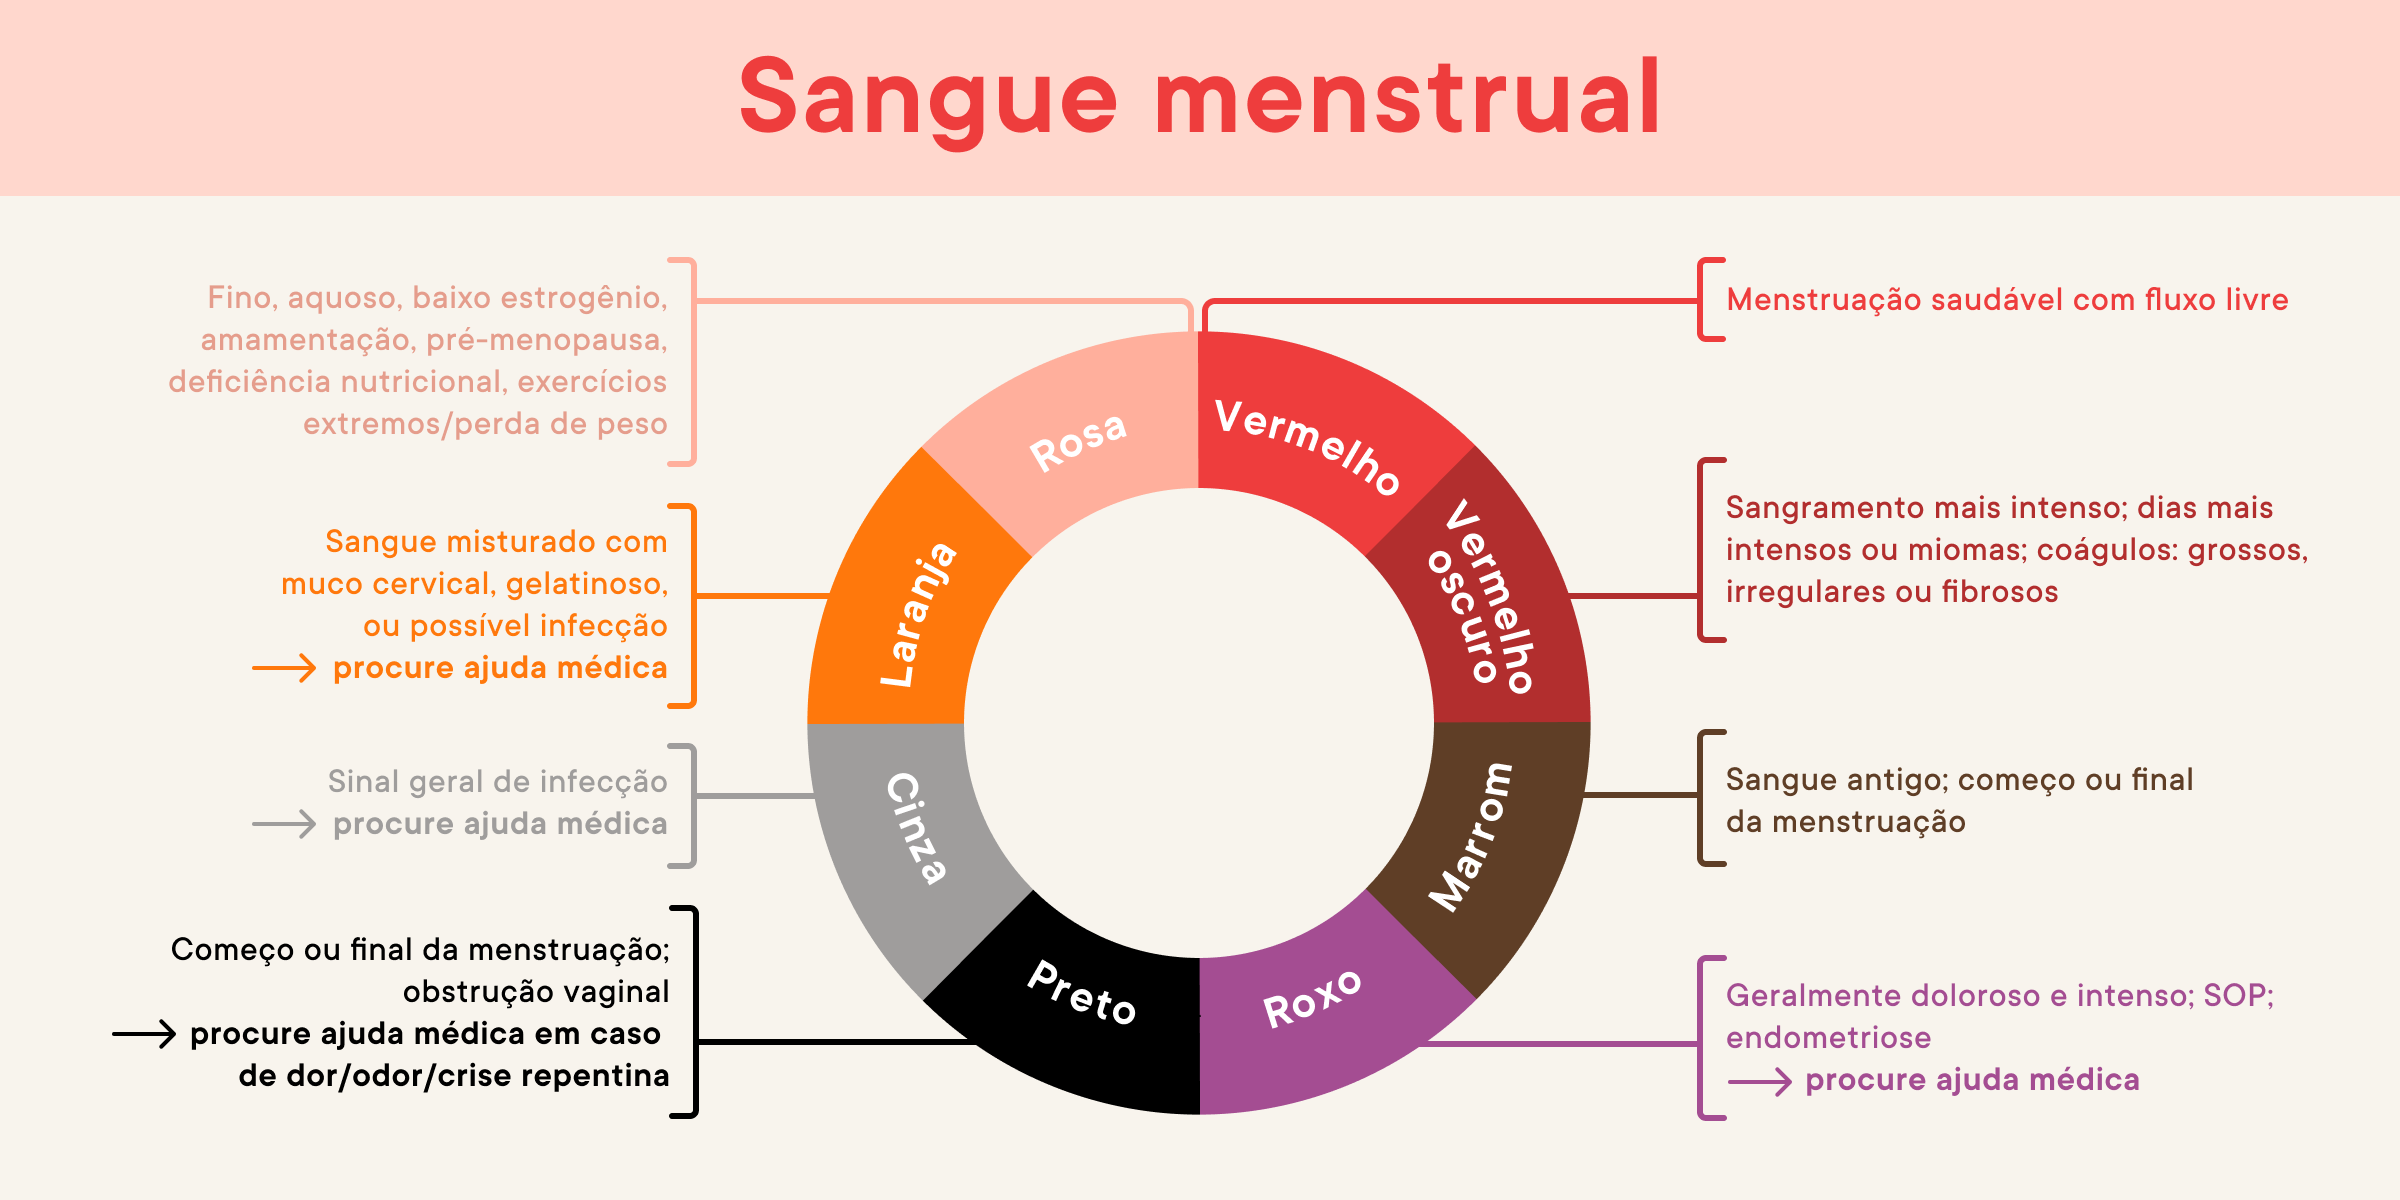 É normal sair um pedaço de carne na menstruação? 